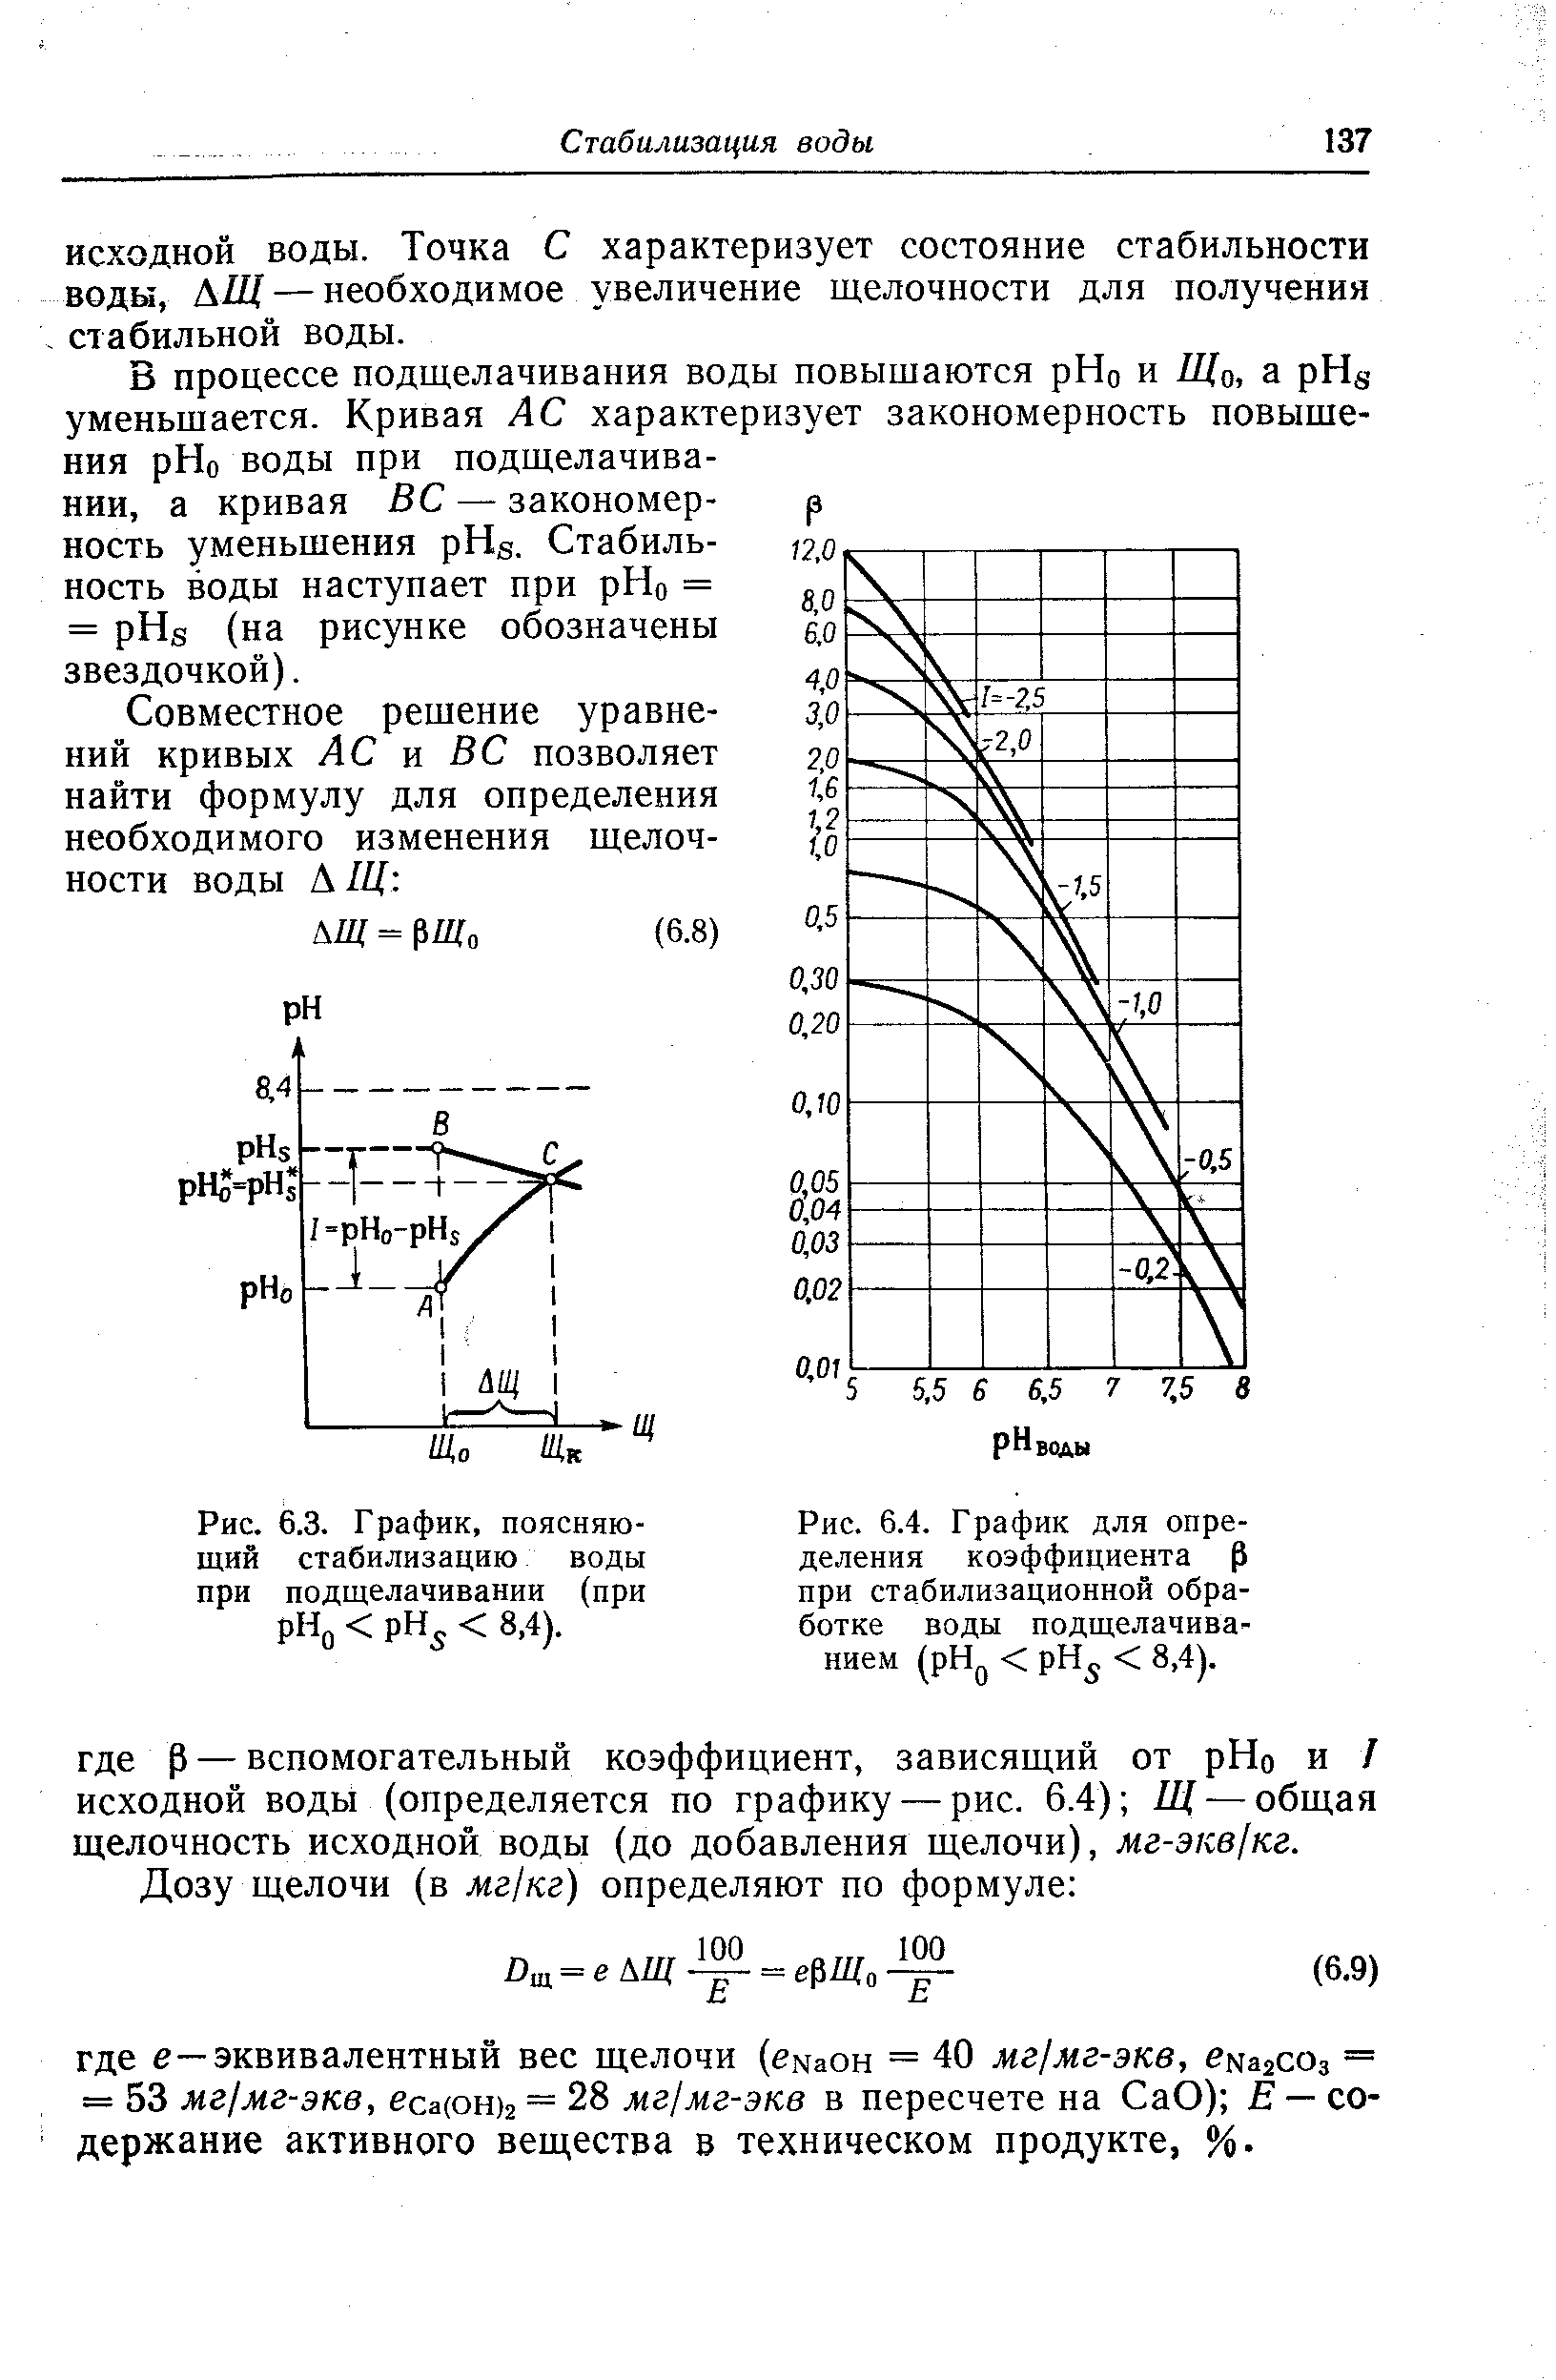 Рис. 6.4. Г рафик для определения коэффициента р при стабилизационной обработке воды подщелачиванием (pH < рН < 8,4).
